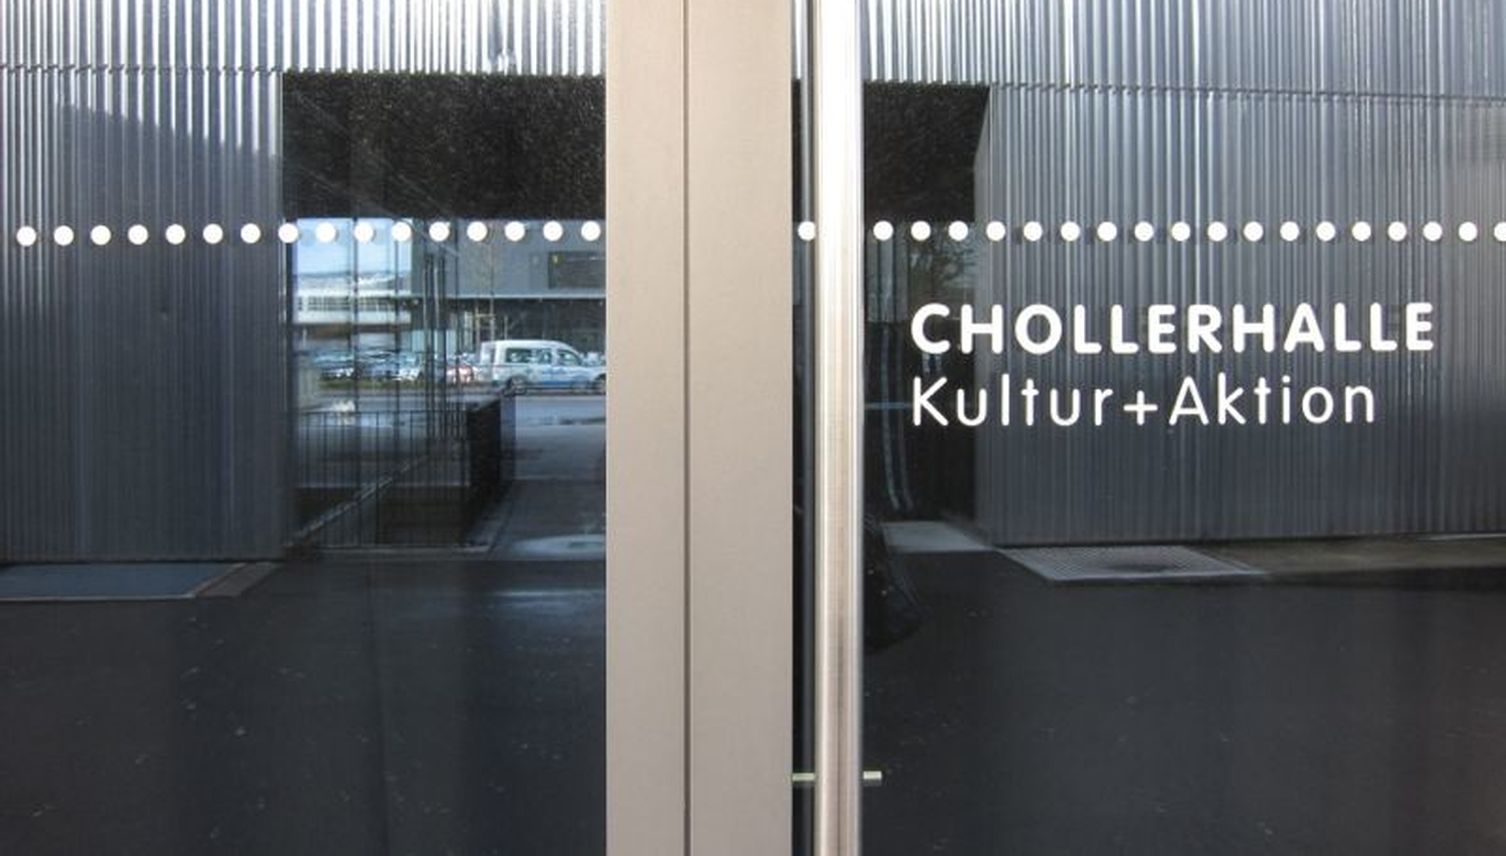 Chollerhalle in Zug erhält jährlich 250 000 Franken